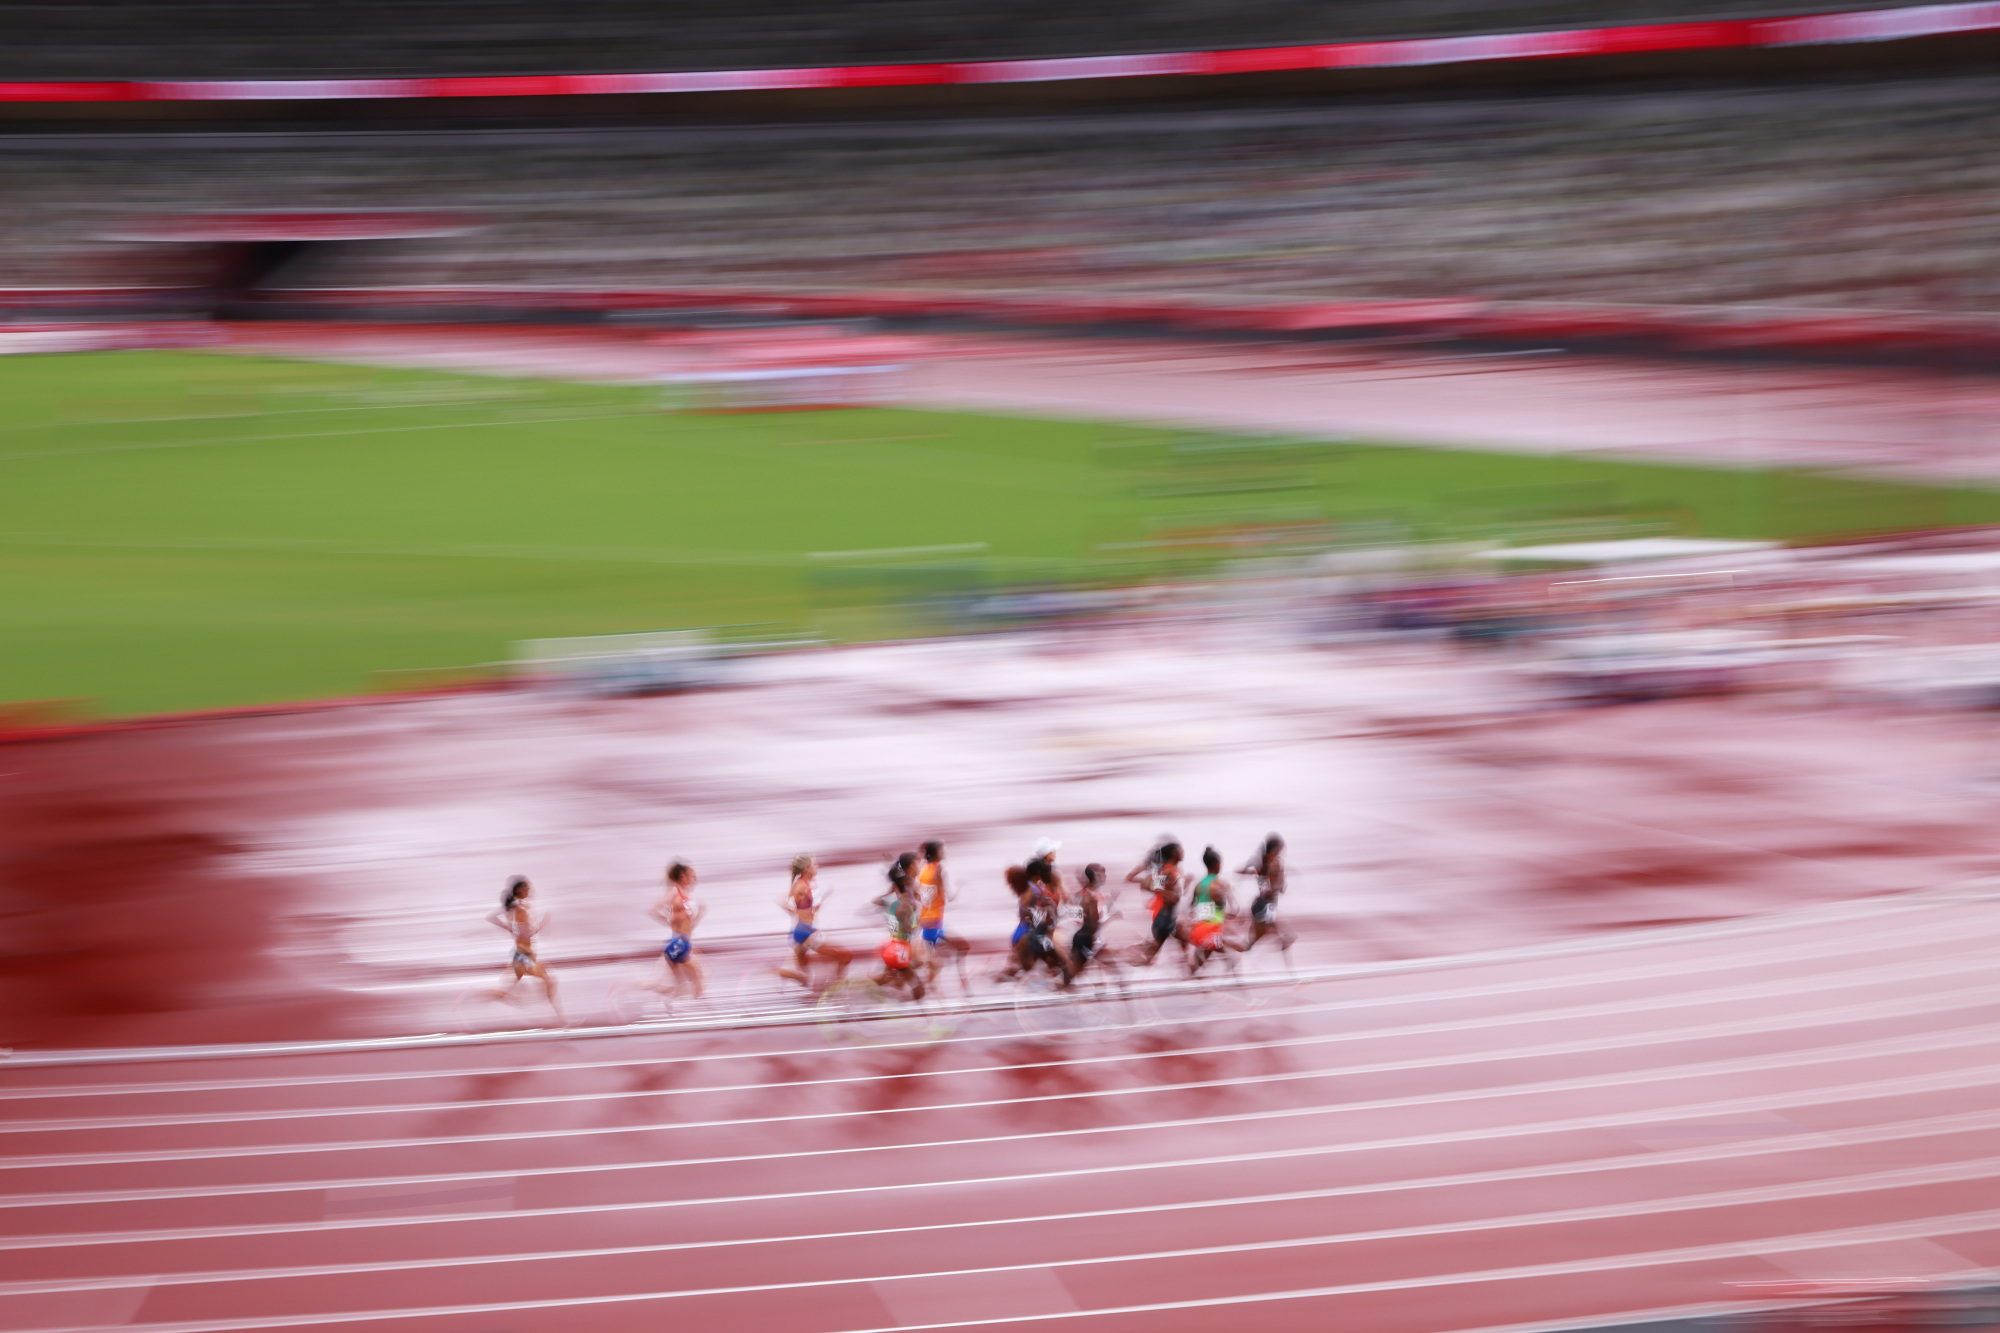 东京奥运会的跑道,似乎正如美国800米运动员墨菲克莱顿感慨的